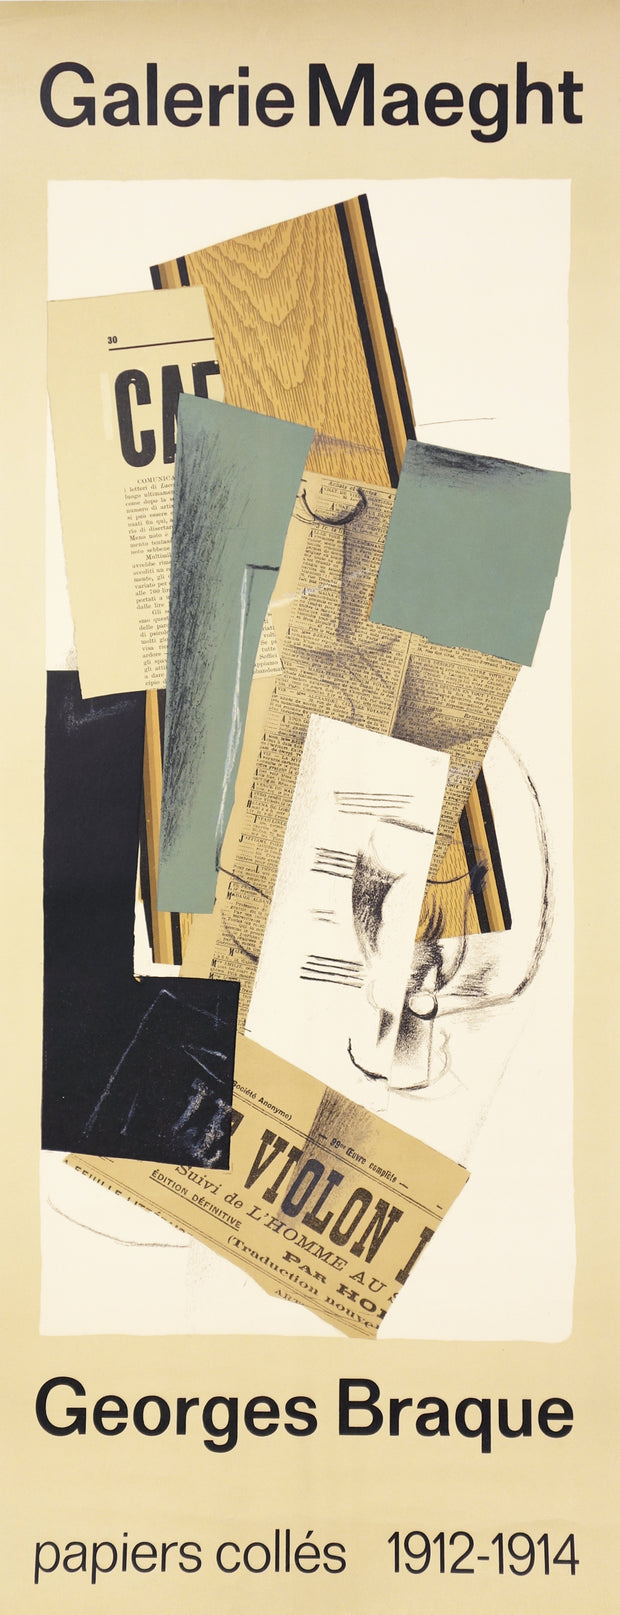 Papier Collés by Georges Braque - Davidson Galleries